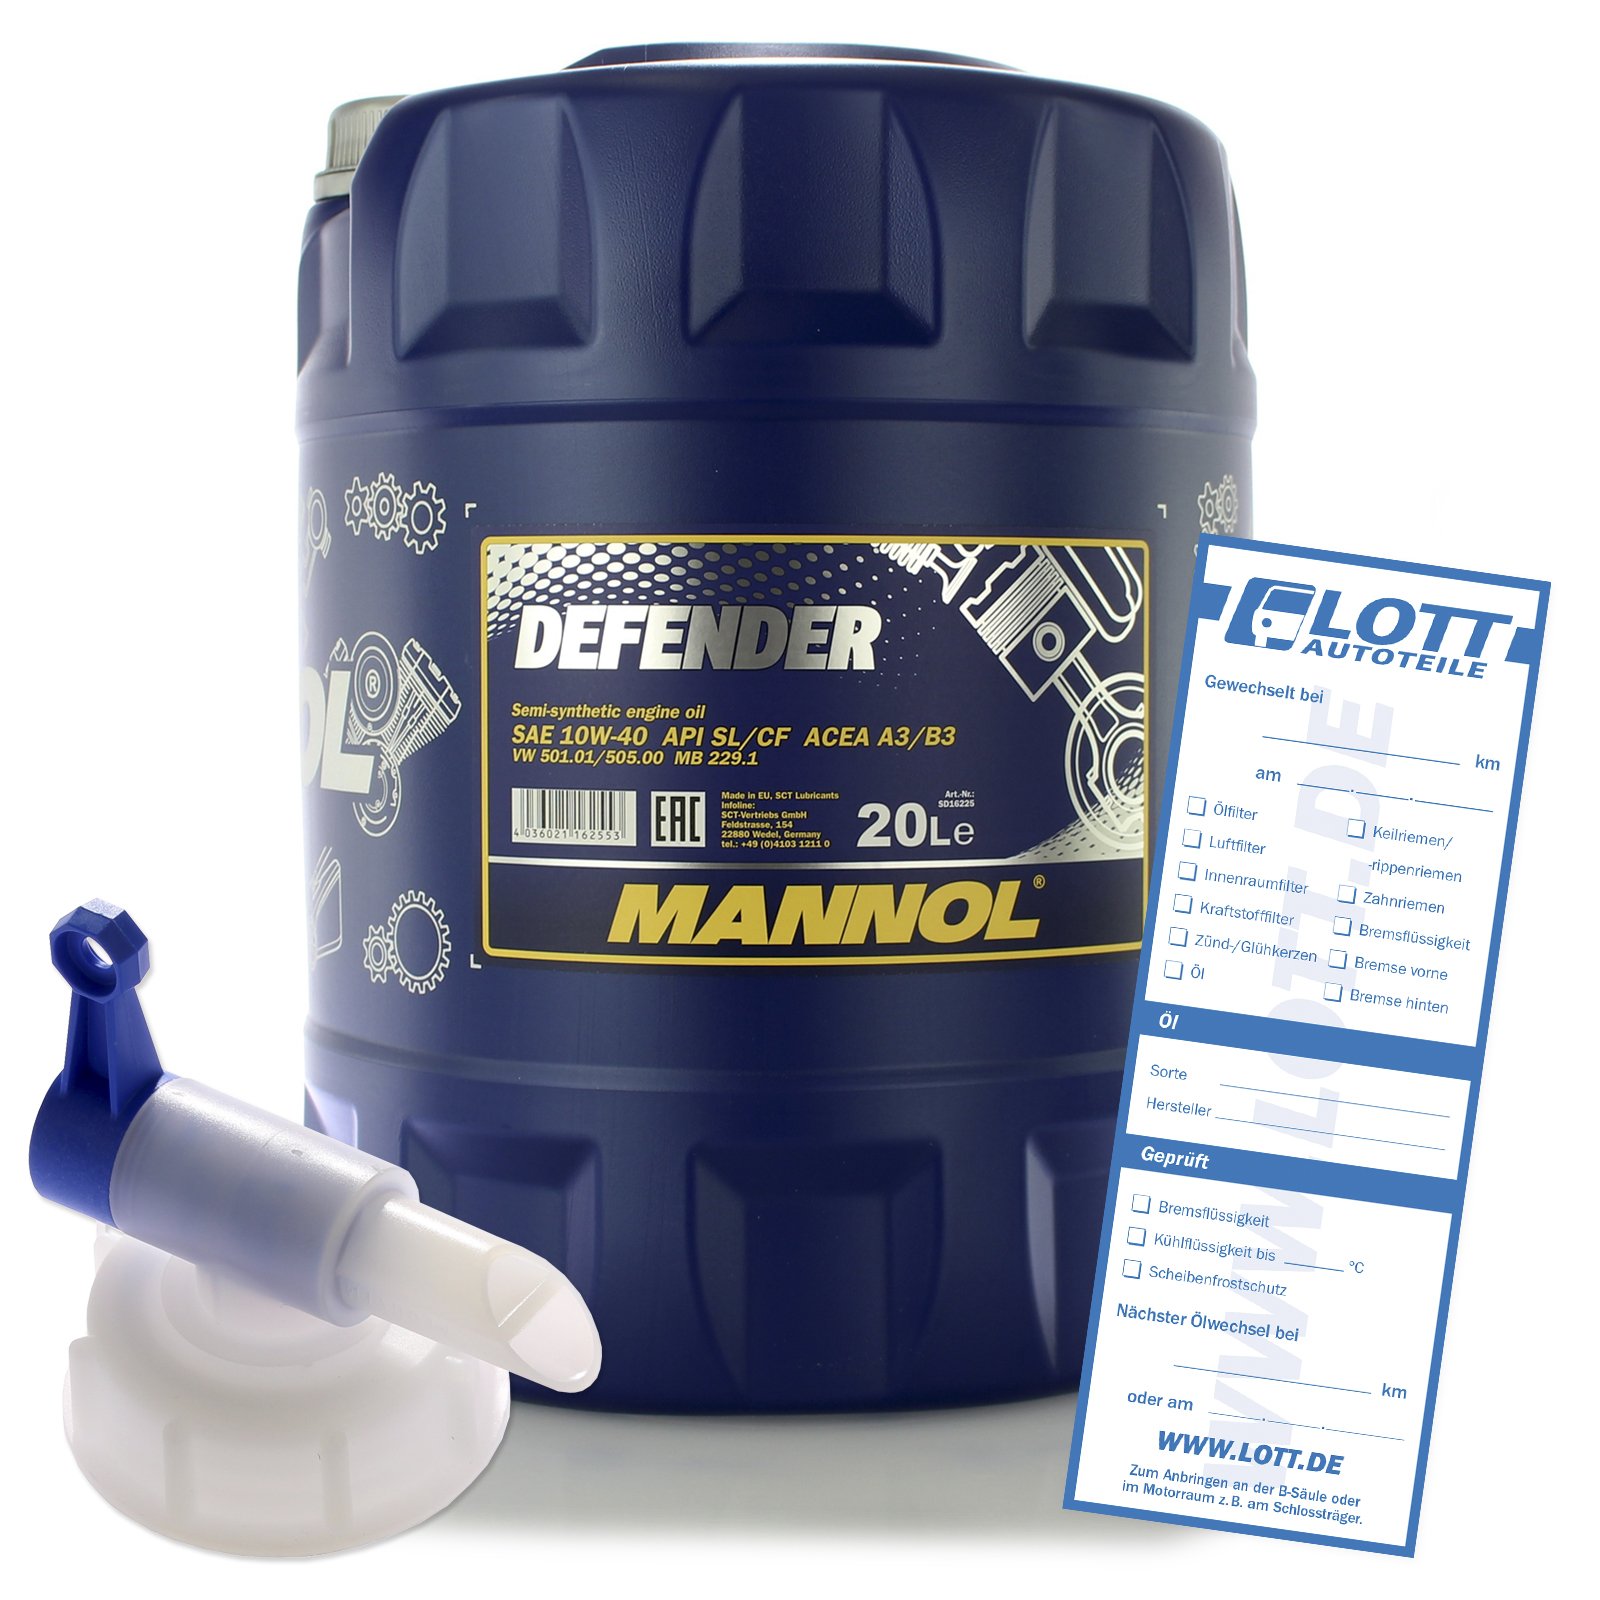 MANNOL Defender 10W-40 20L Motoröl + Auslaufhahn von MANNOL